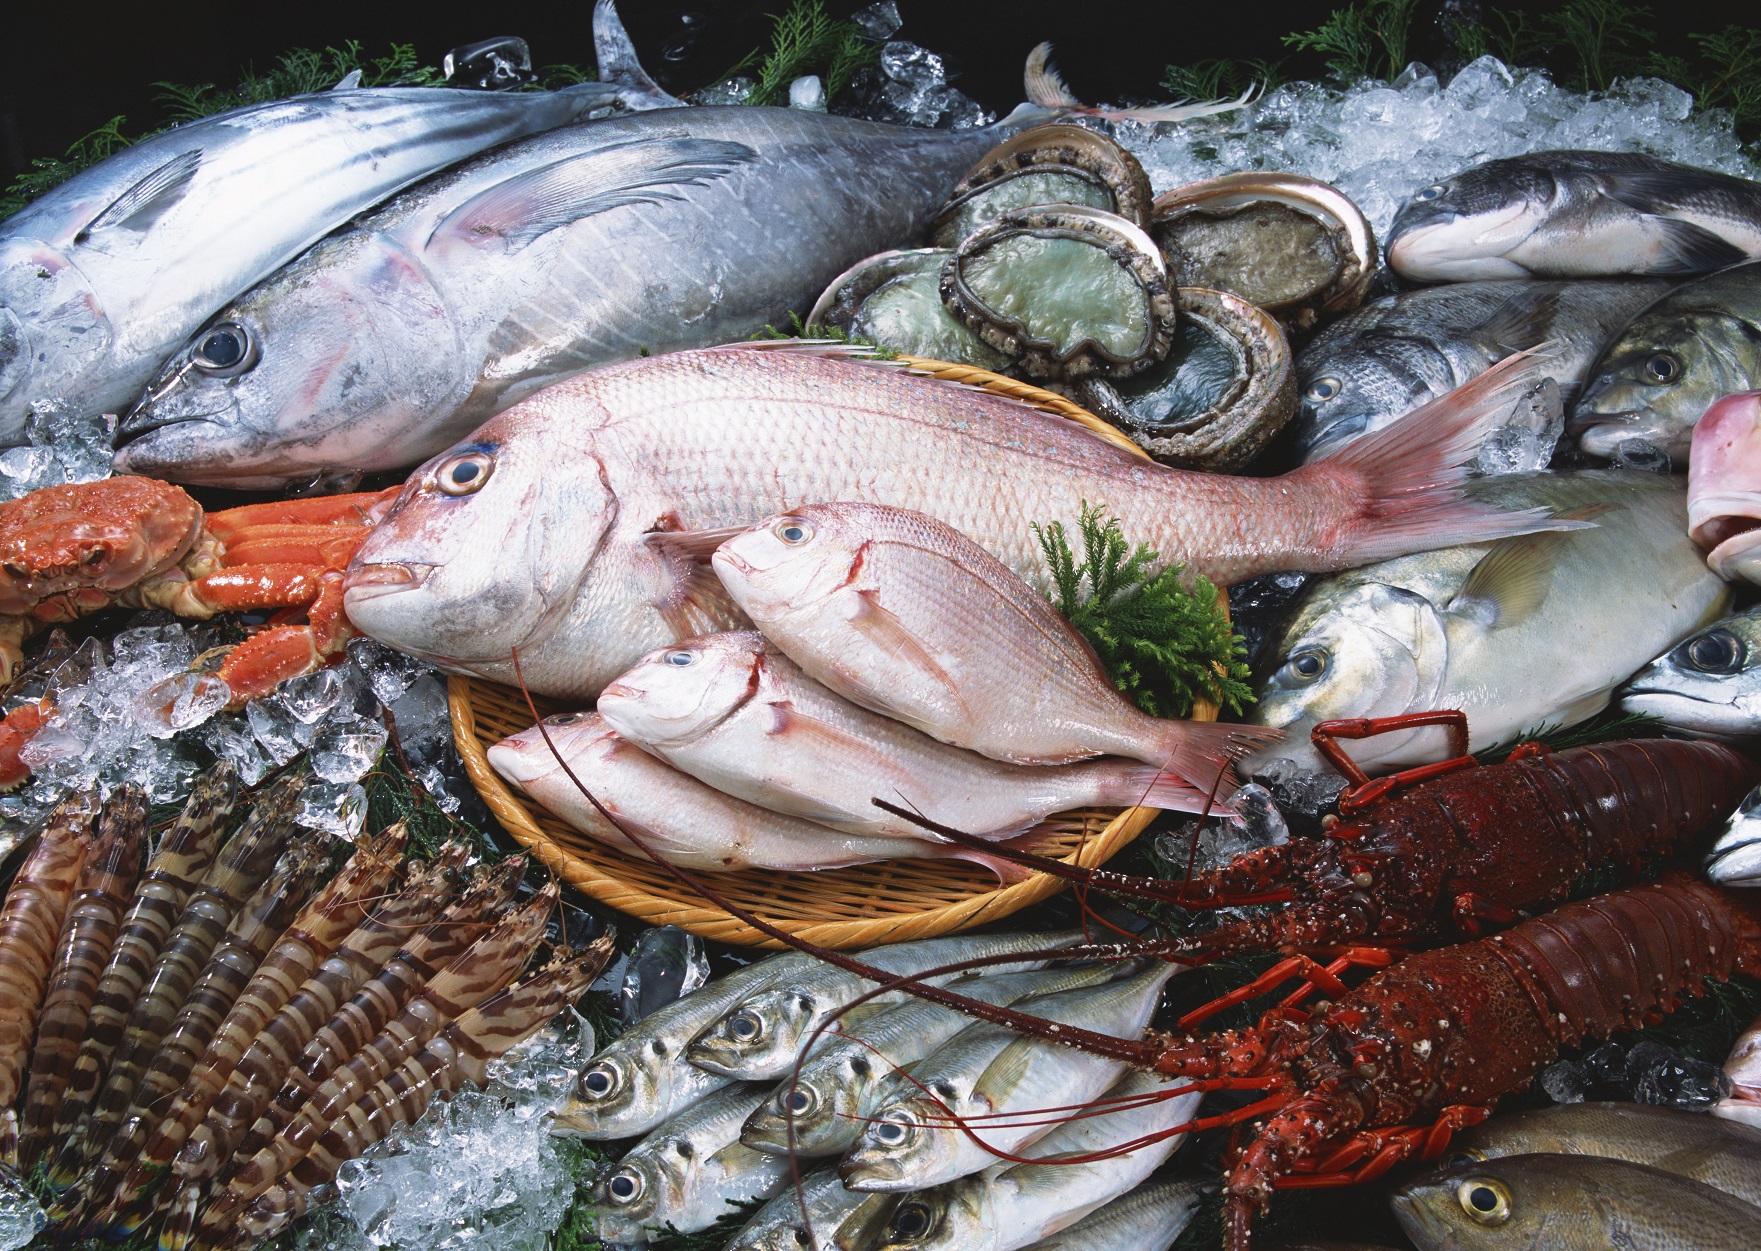 "Cuộc chiến" giành lại thị phần trong thị trường hải sản nội địa